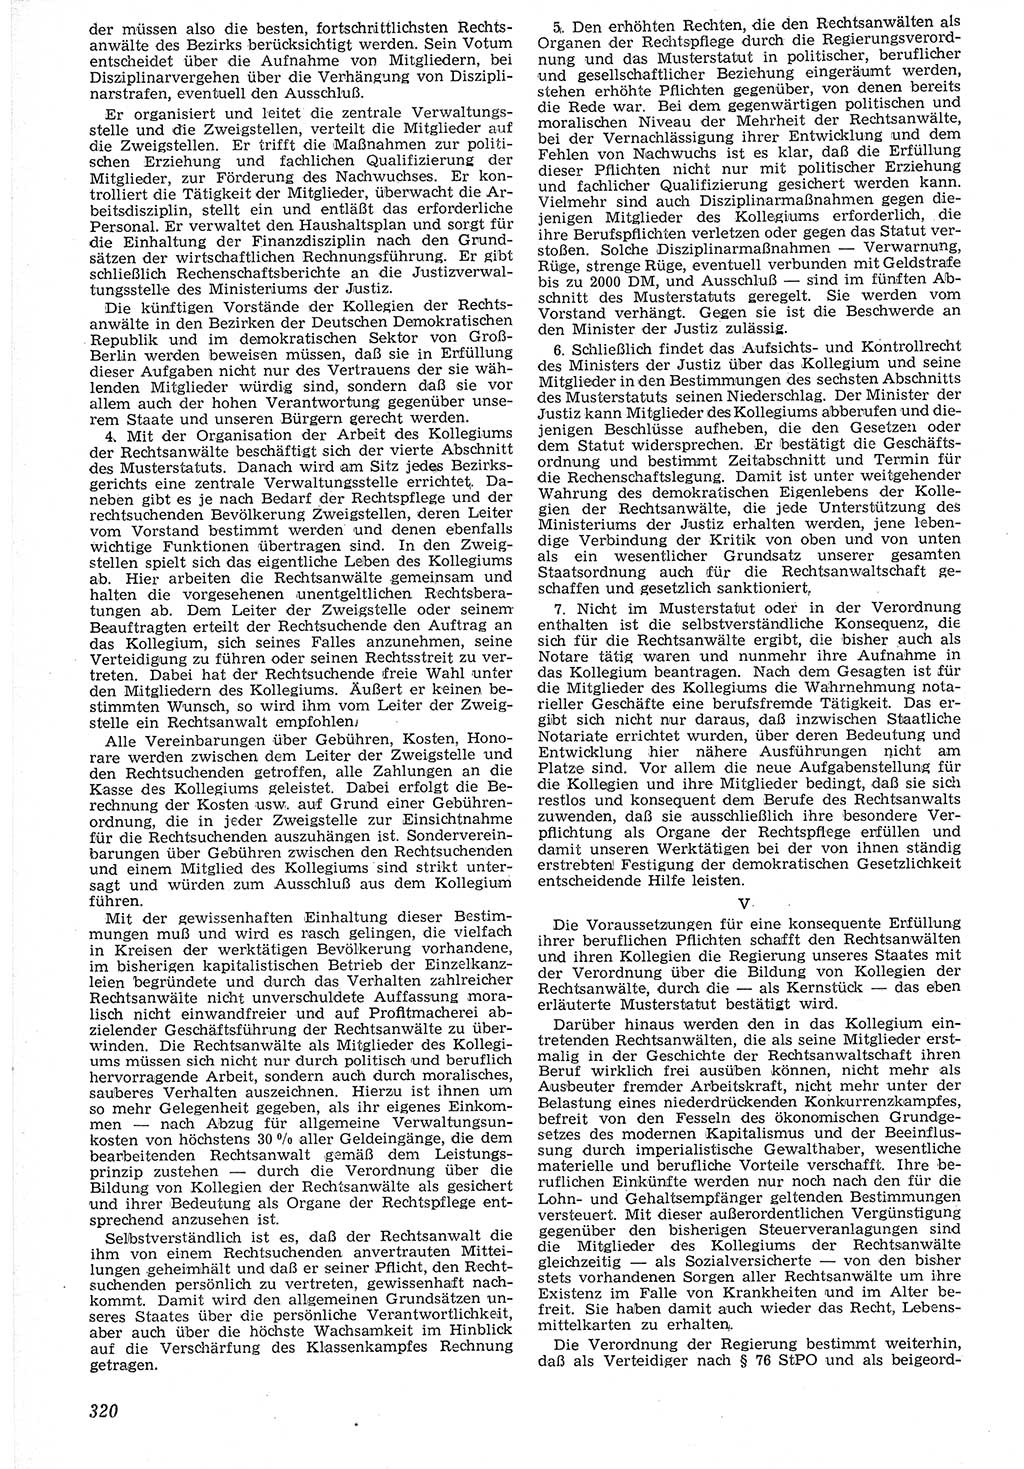 Neue Justiz (NJ), Zeitschrift für Recht und Rechtswissenschaft [Deutsche Demokratische Republik (DDR)], 7. Jahrgang 1953, Seite 320 (NJ DDR 1953, S. 320)